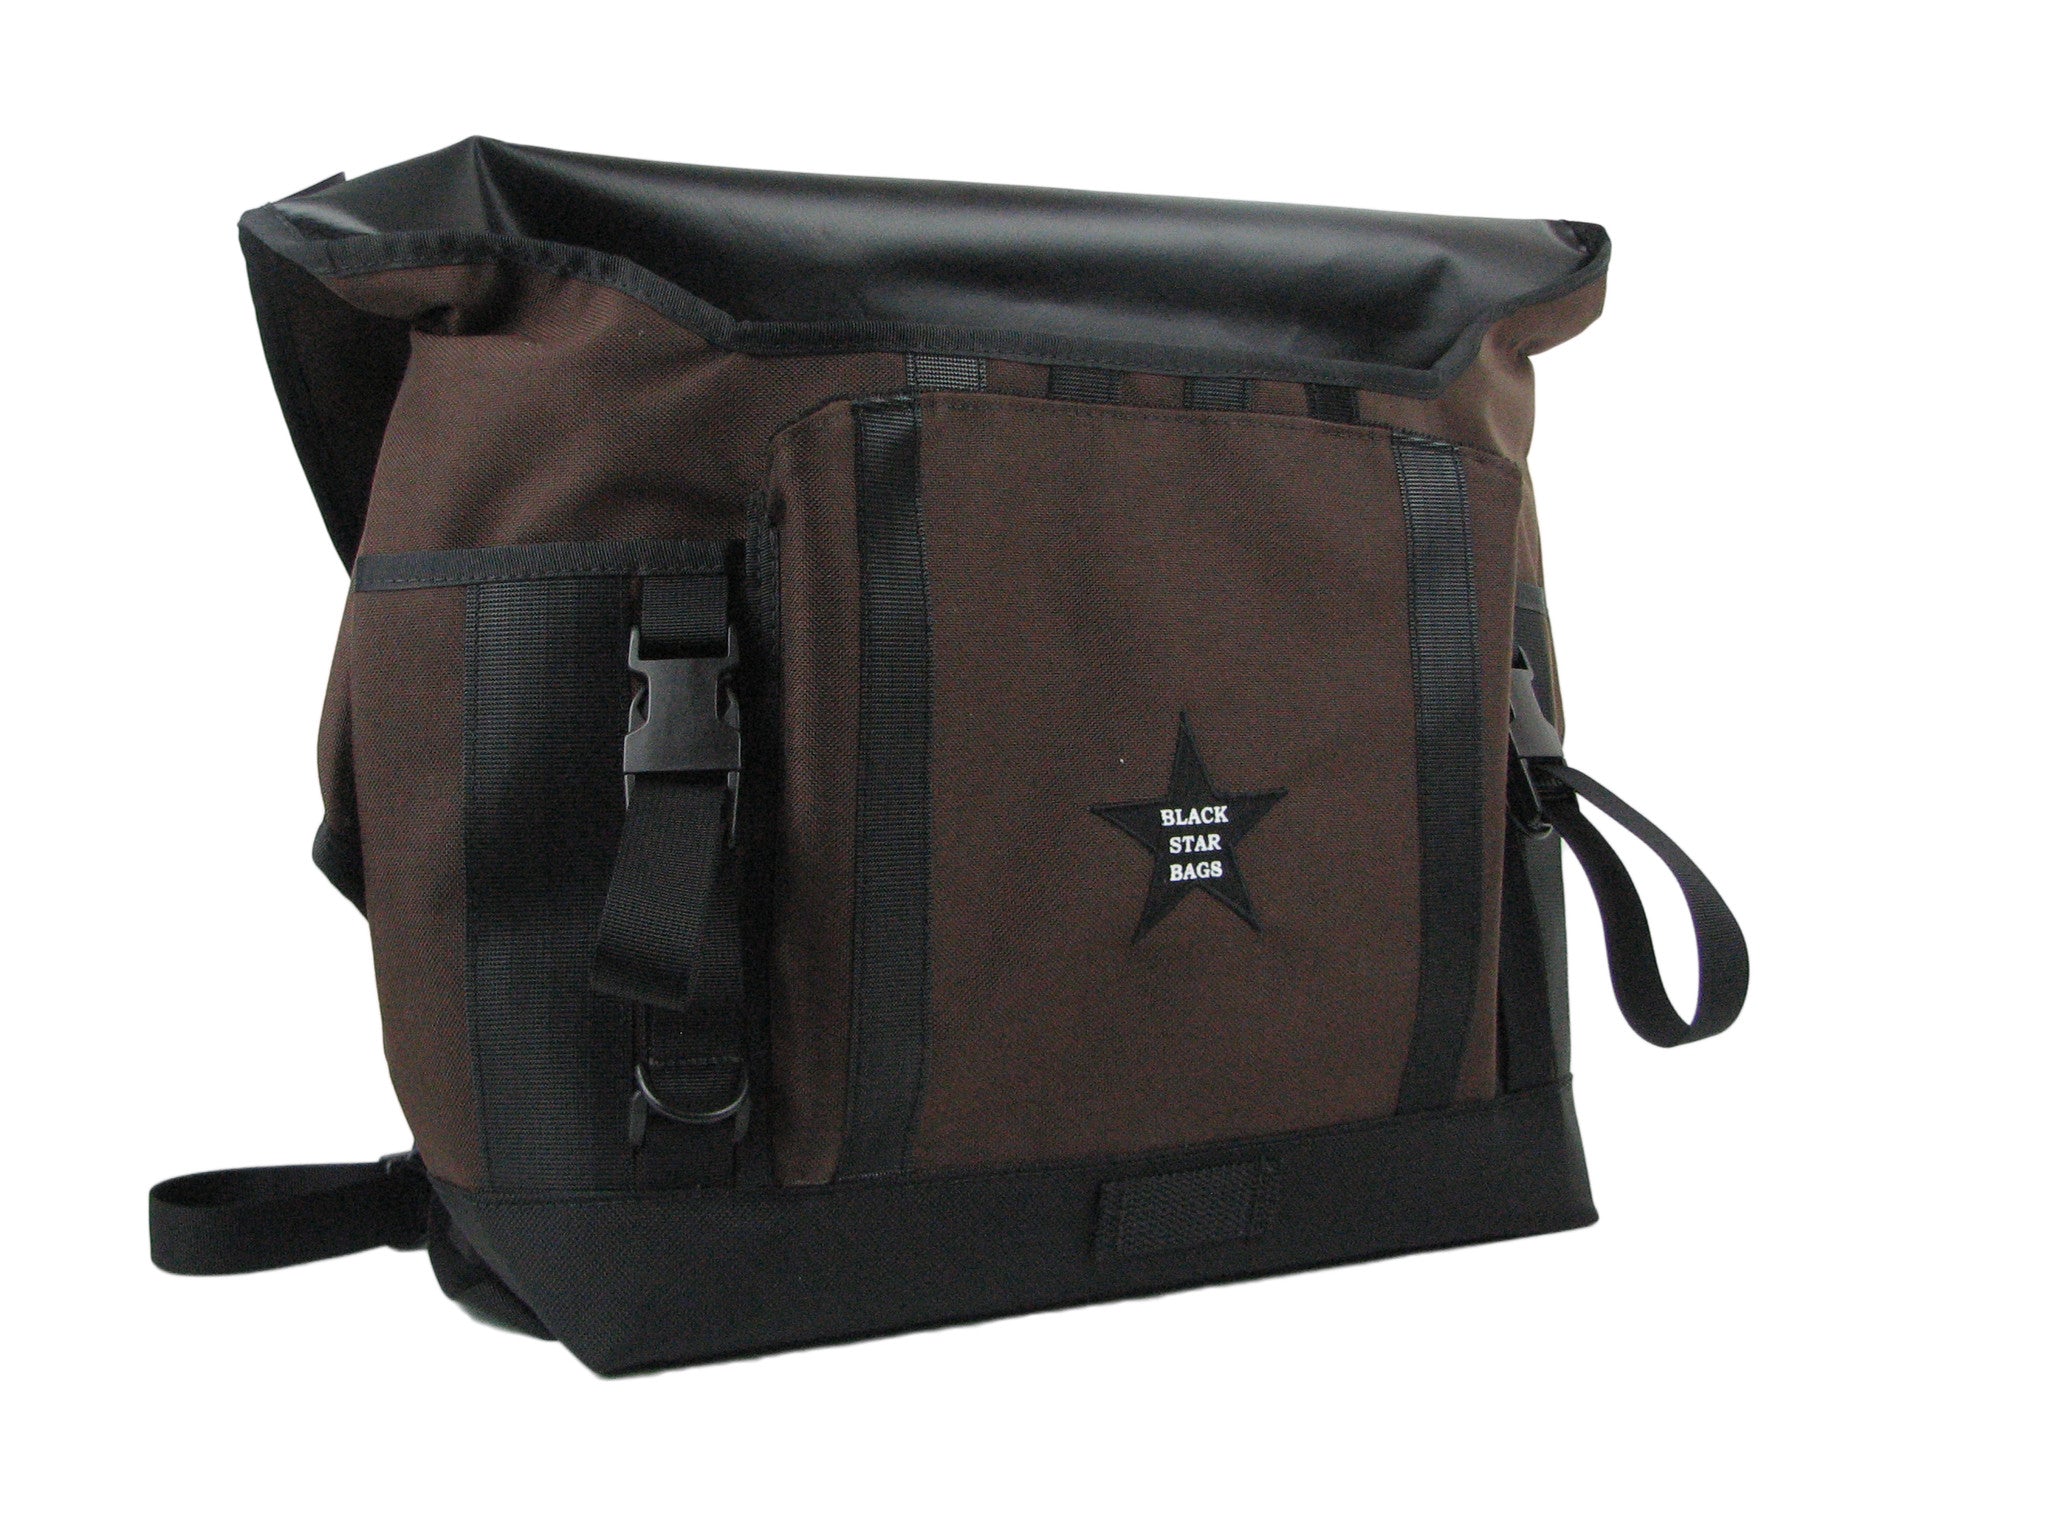 All-Weather Vinyl Messenger Bag with Shoulder Strap, Black/Brown